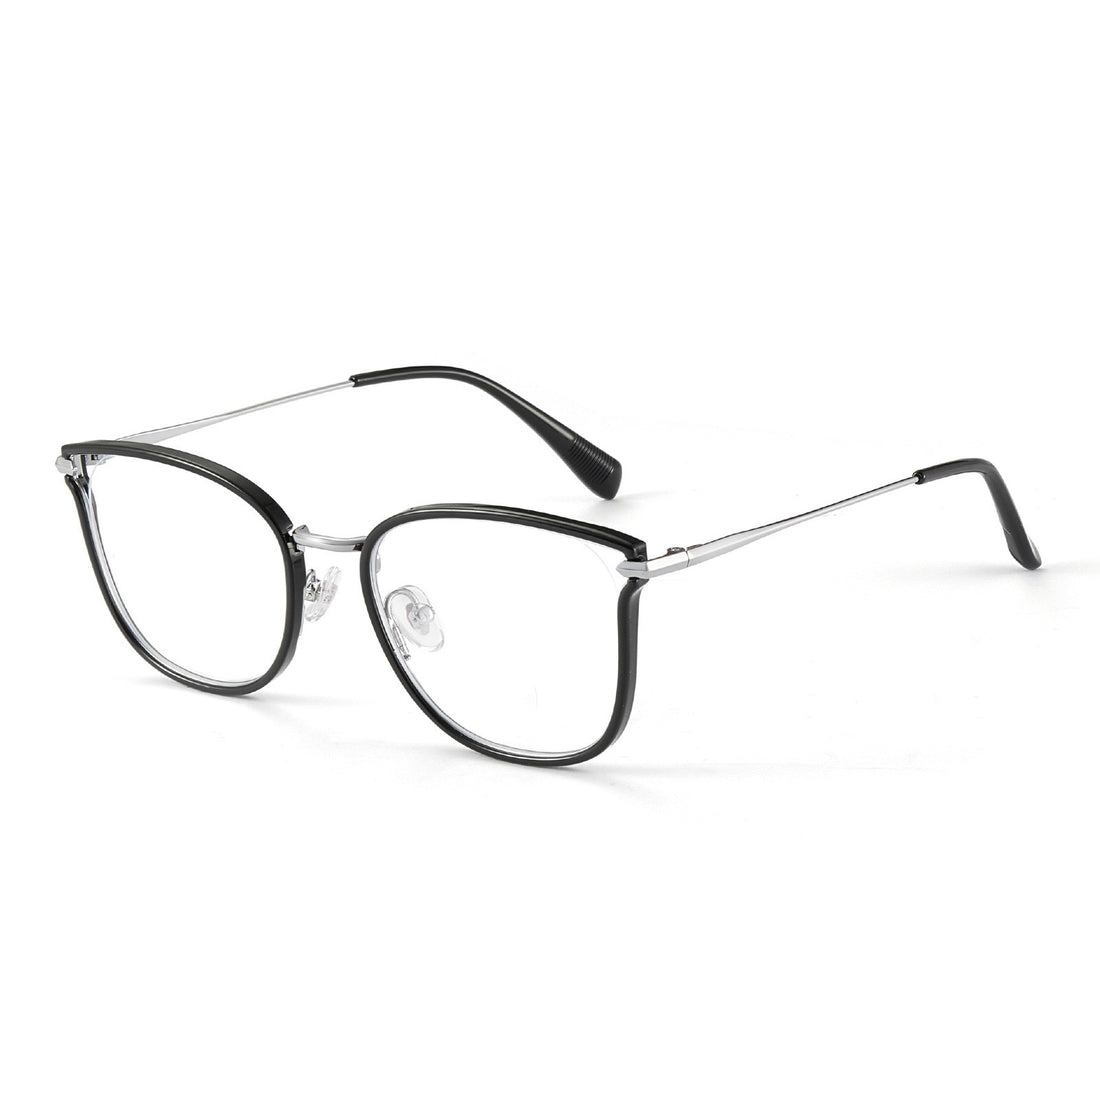 Cat Eye Glasses with Prescription Lenses VK2058